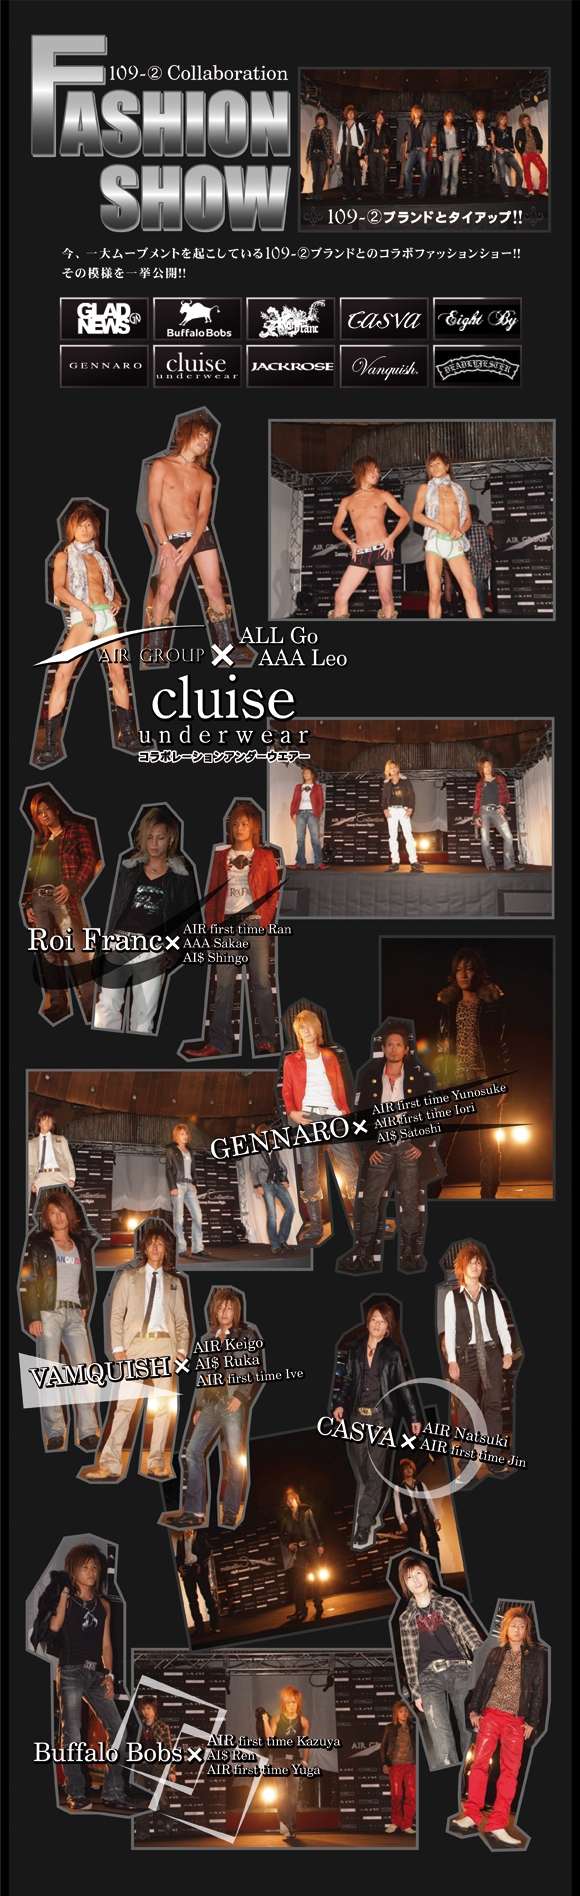 歌舞伎町のホストクラブエアーグループが2007年8月12日に行ったAIRGROUPCollectionの模様をお届けします。